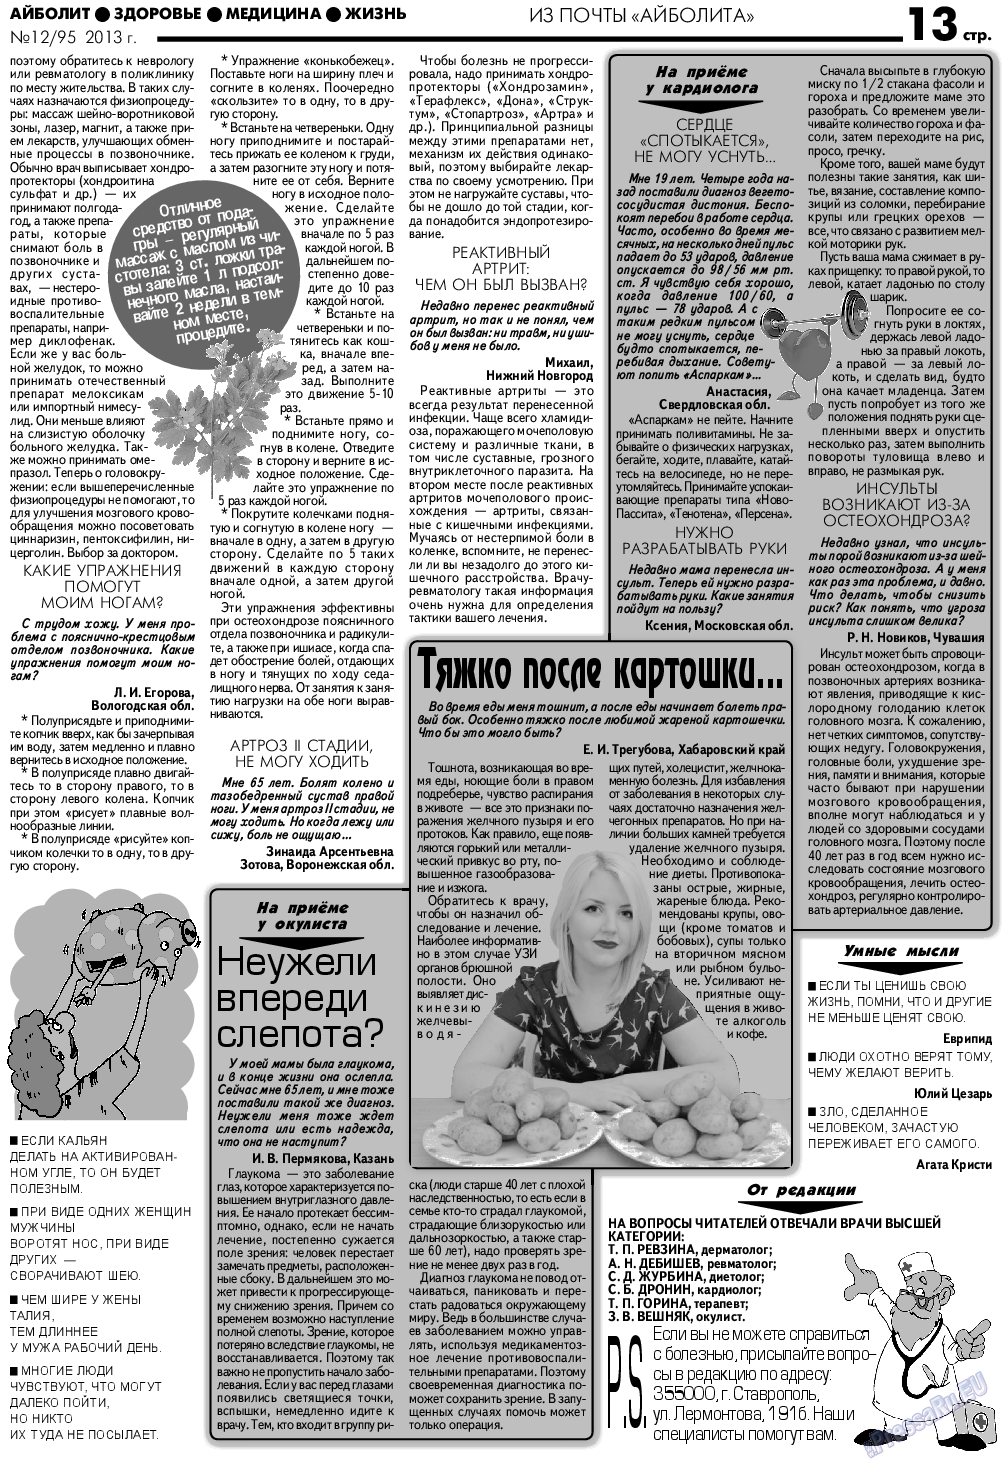 АйБолит, газета. 2013 №12 стр.13